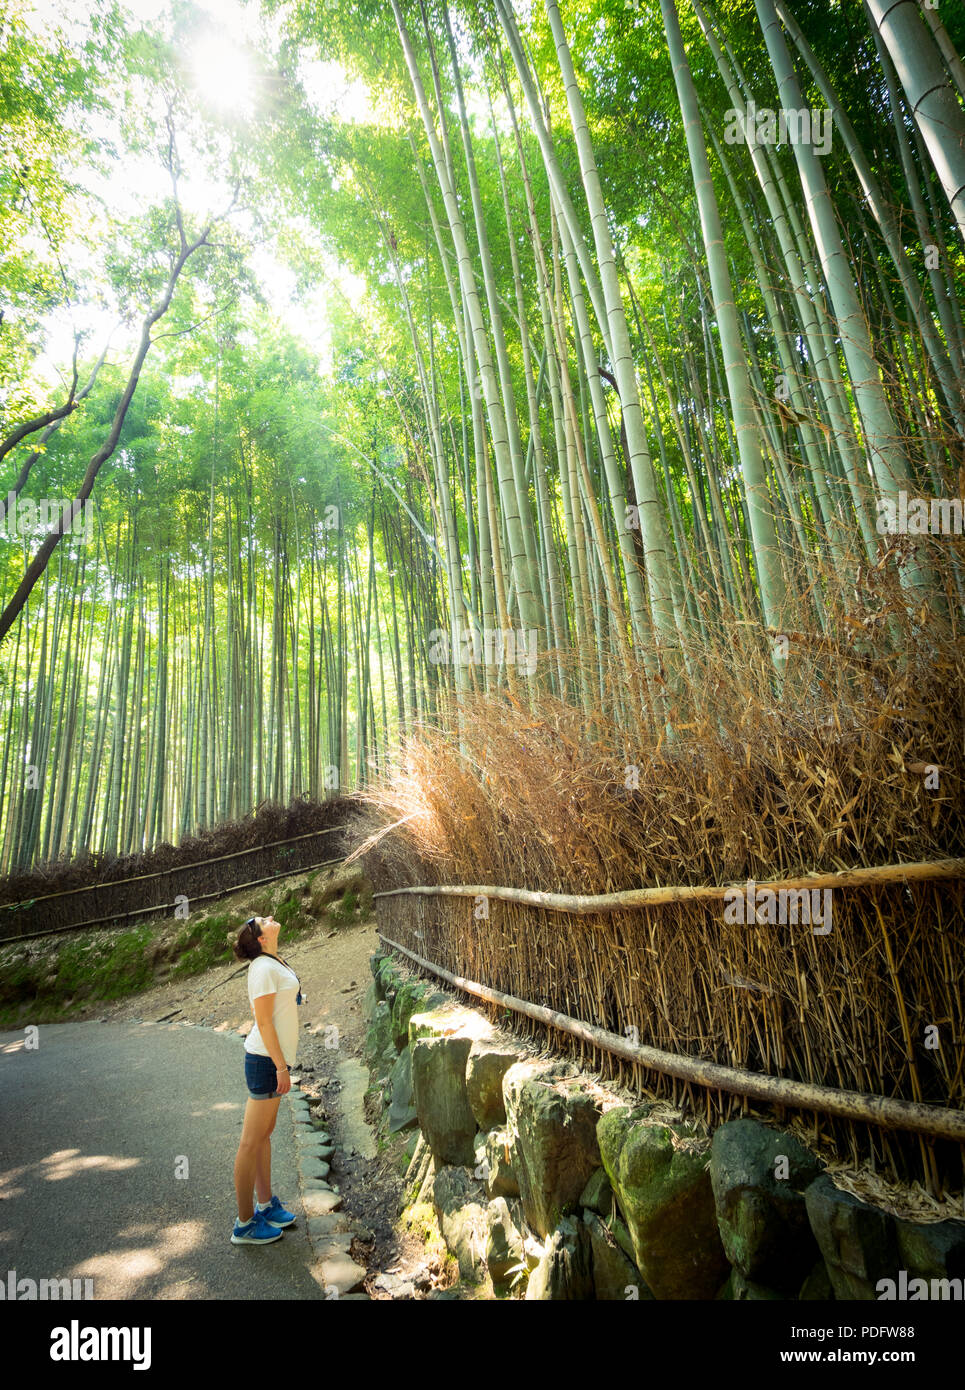 Una bambina guarda fino all'imponente baldacchino della Sagano Foresta di Bamboo (Arashiyama Boschetto di bambù), una popolare attrazione di Arashiyama, Kyoto, Giappone. Foto Stock